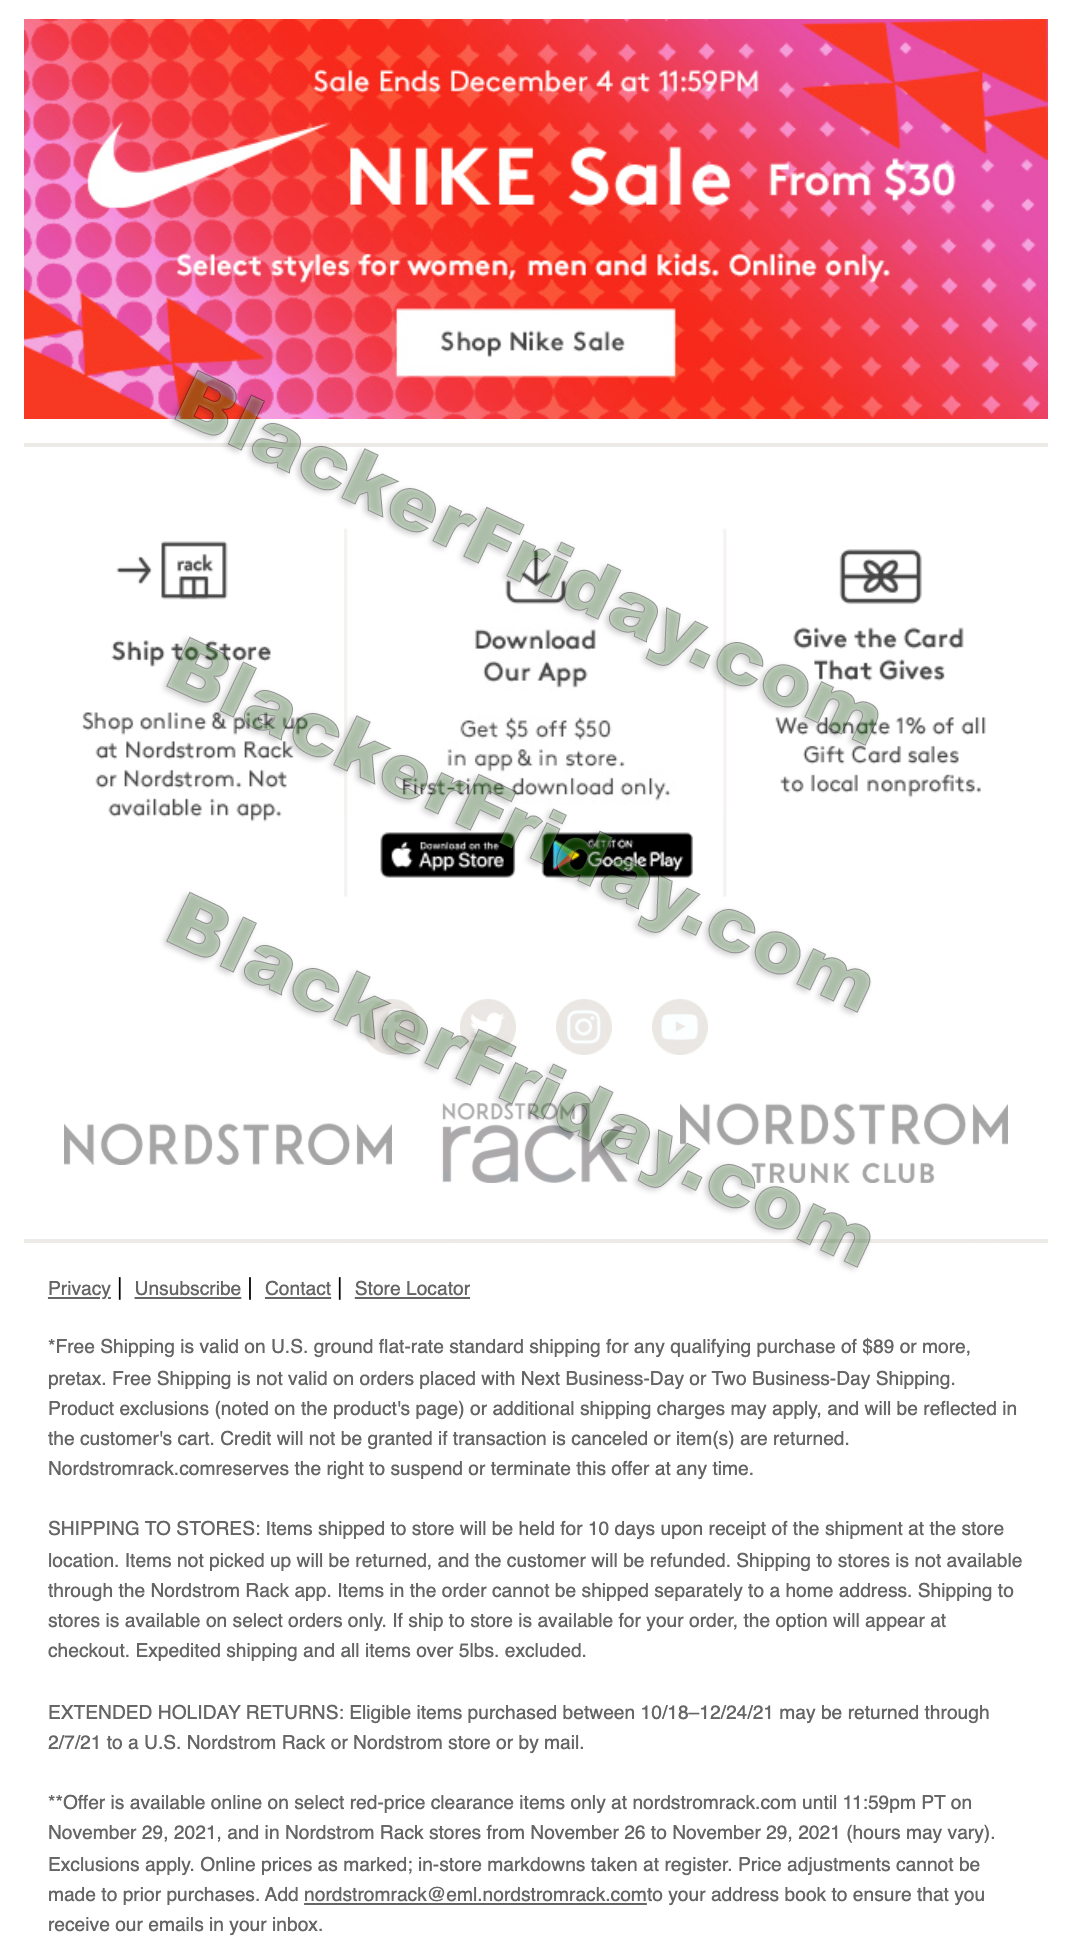 Nordstrom Rack Clearance Sale Scam - Don't Get Duped! - MalwareTips Blog